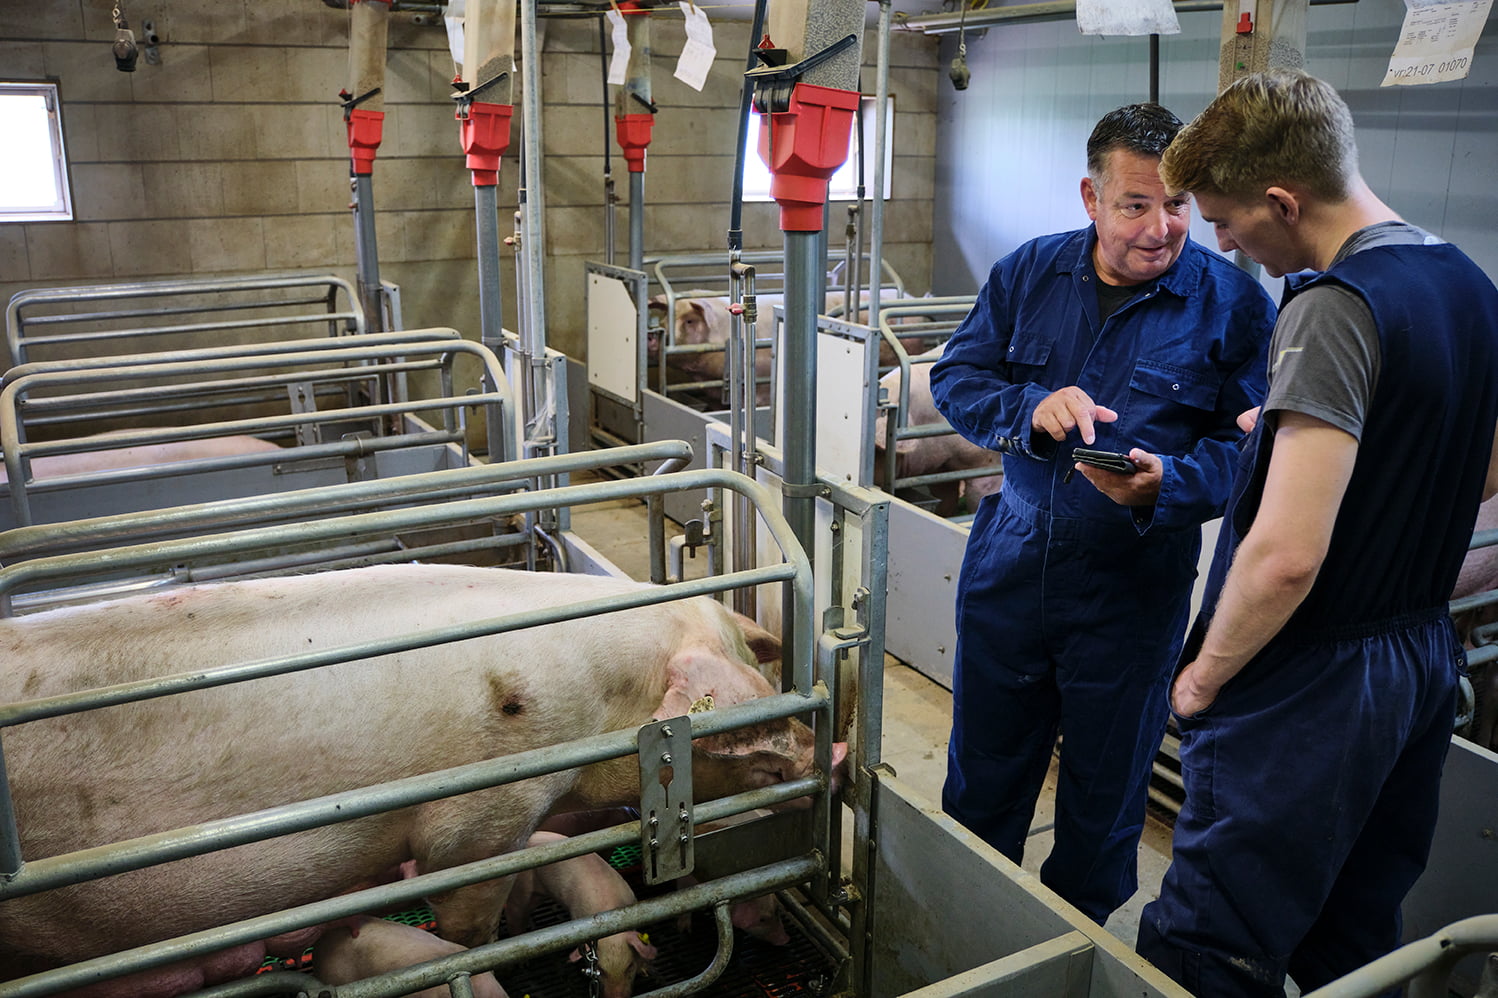 Agrariër legt iets uit aan medewerker door iets te tonen op zijn smartphone. Beide personen staan in een varkensstal.